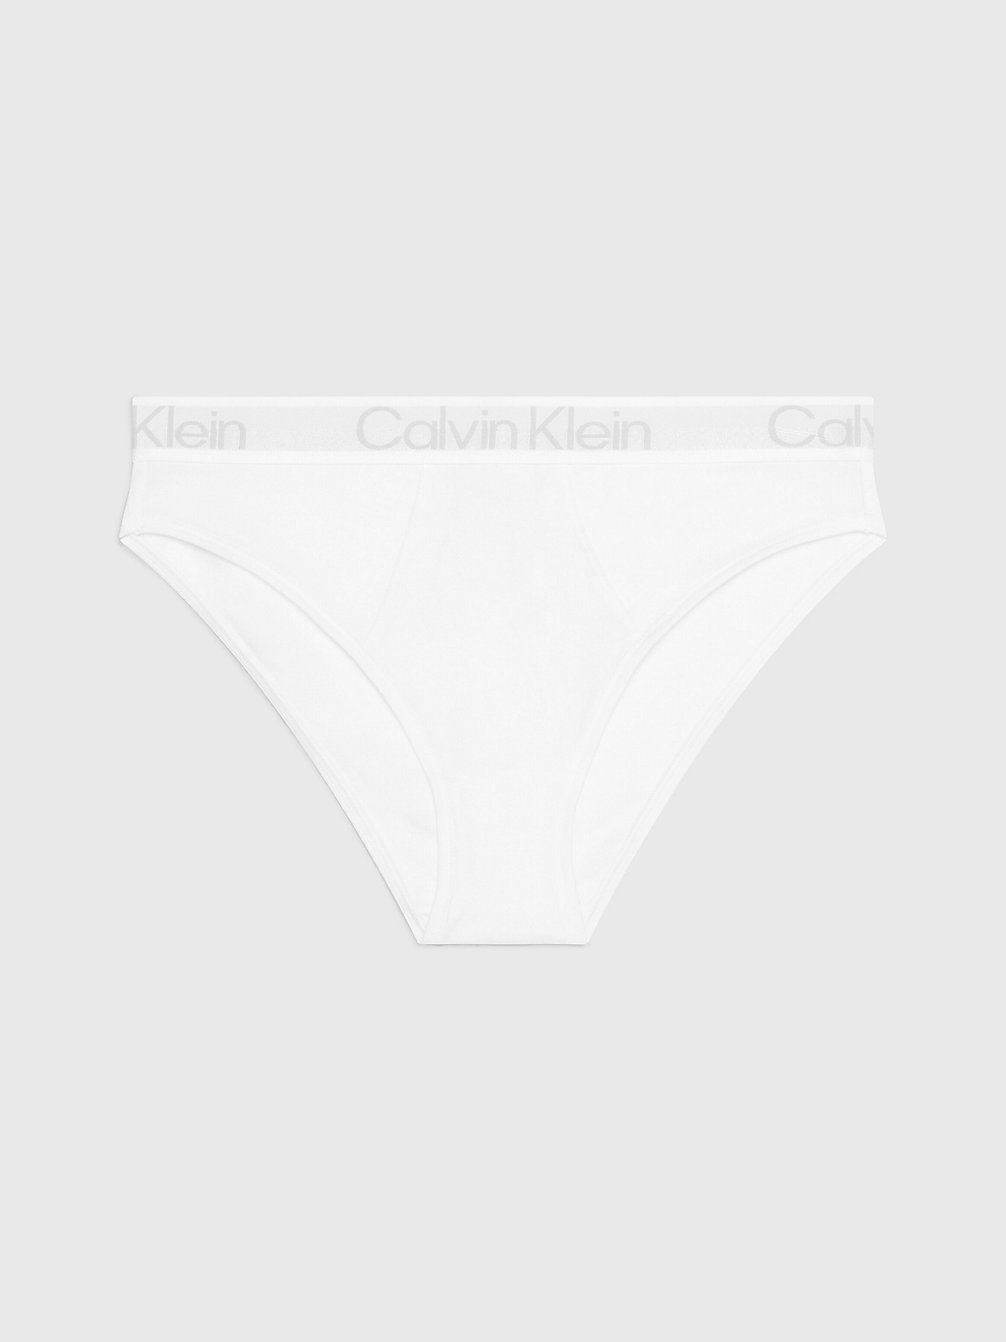 WHITE > Brazyliany Z Wysokimi Nogawkami - Modern Structure > undefined Kobiety - Calvin Klein